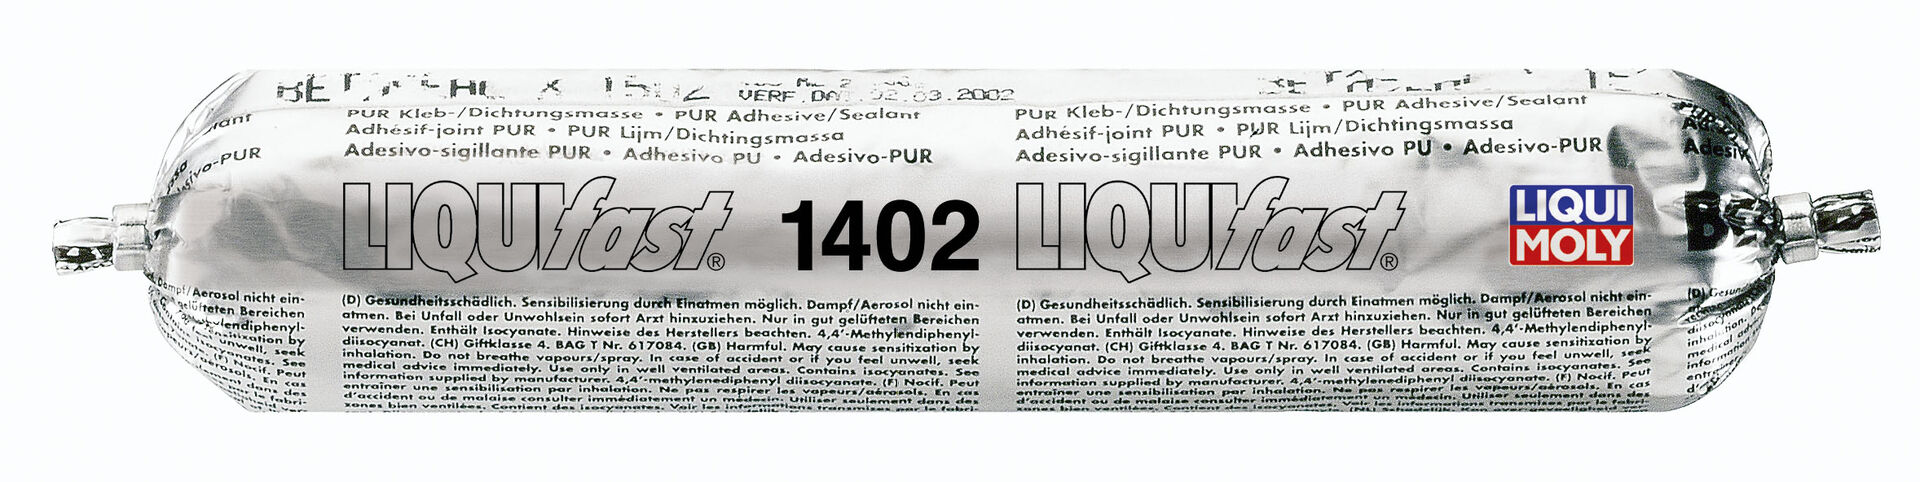 Liqui Moly Liquifast 1402 Scheibenreparatur Kleber Scheibenklebstoff 400 ml